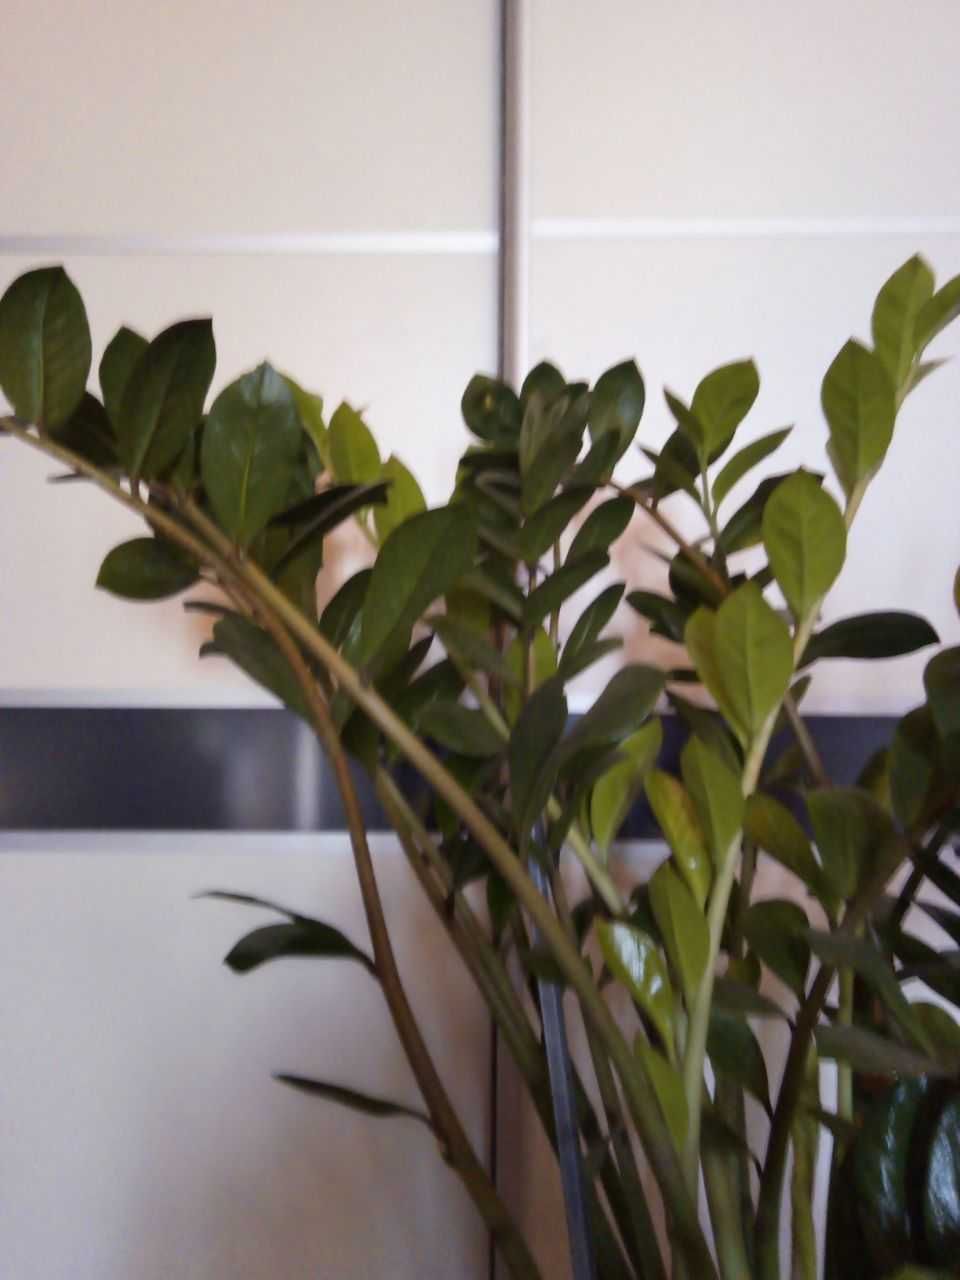 Гигантский замиокулькас (долларовое дерево) для большого дома/офиса